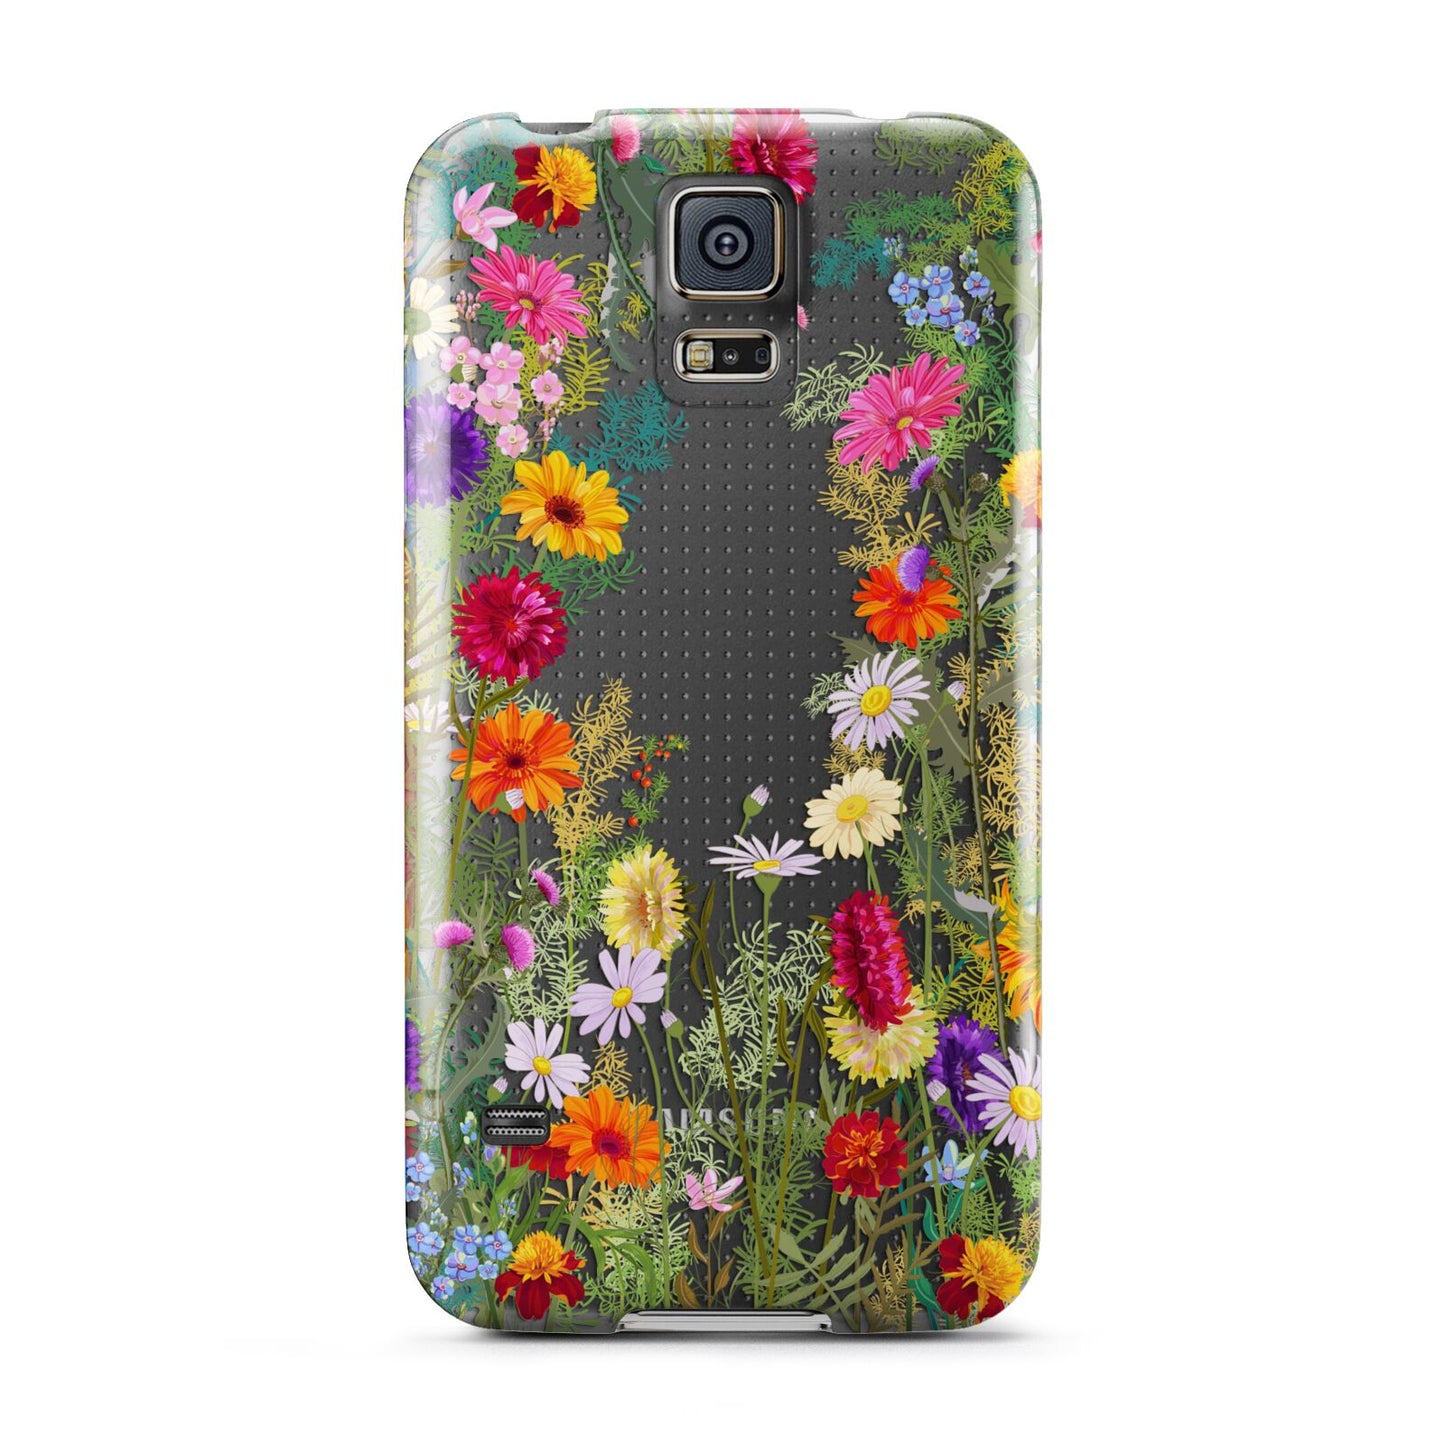 Wildflower Samsung Galaxy S5 Case